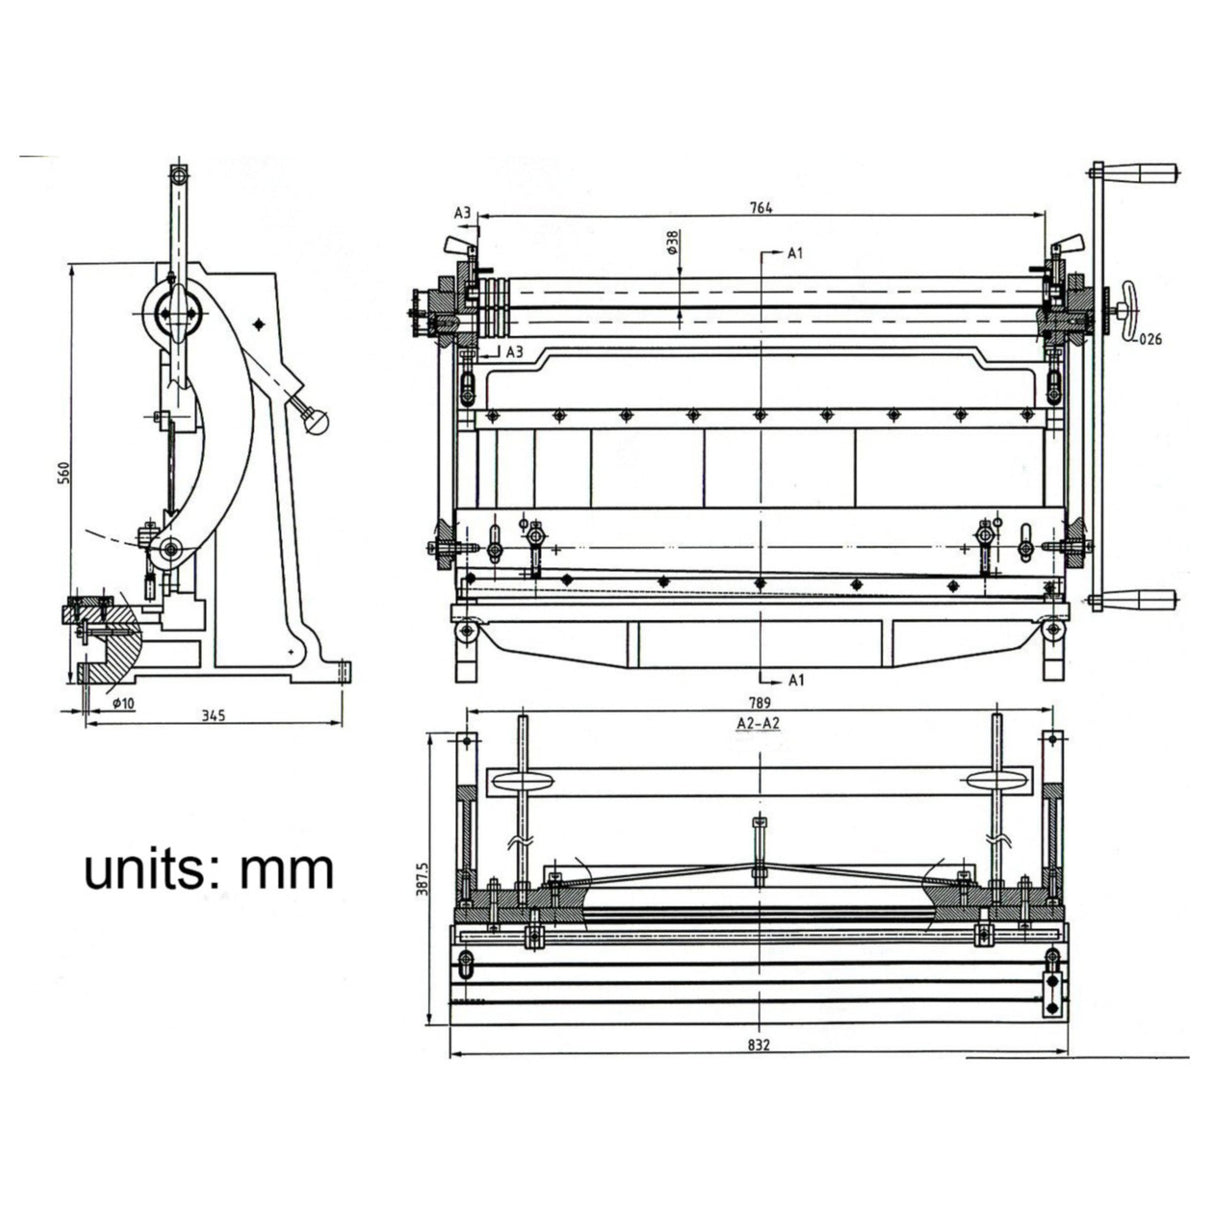 KANG Industrial 3-IN-1/30 760mm Sheet Metal Guillotine Brake and Slip Roll Machine, Combination Sheet Metal Brake